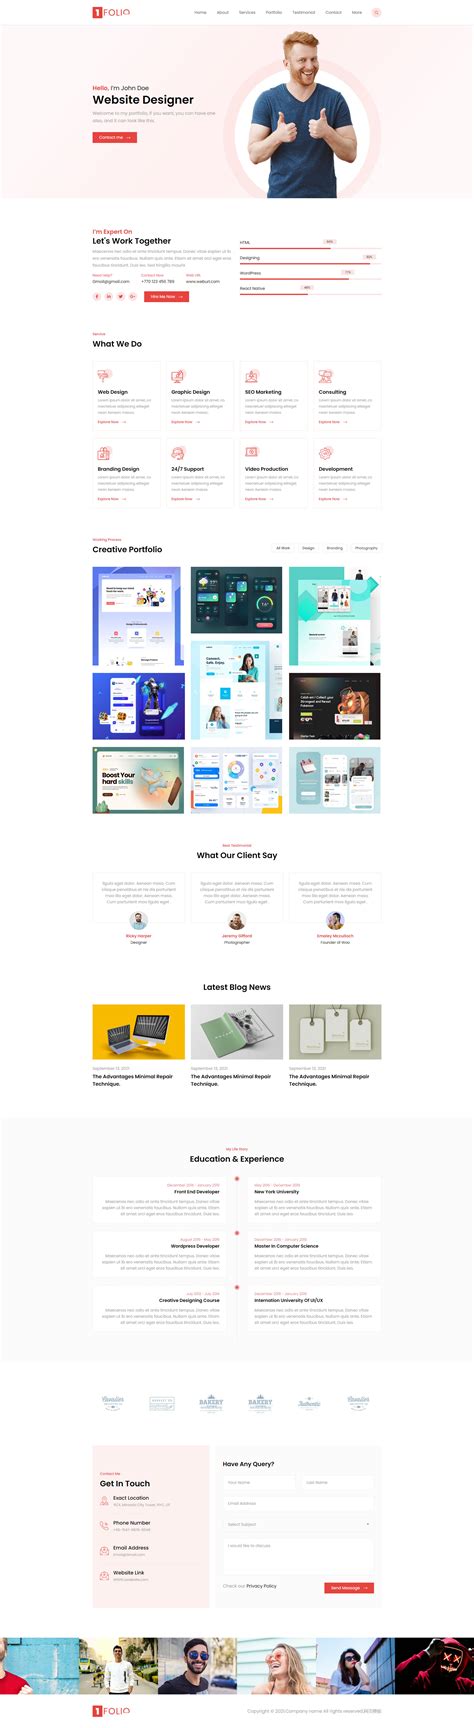 php中文网-web设计师博客个人网站模板-Folio-预览